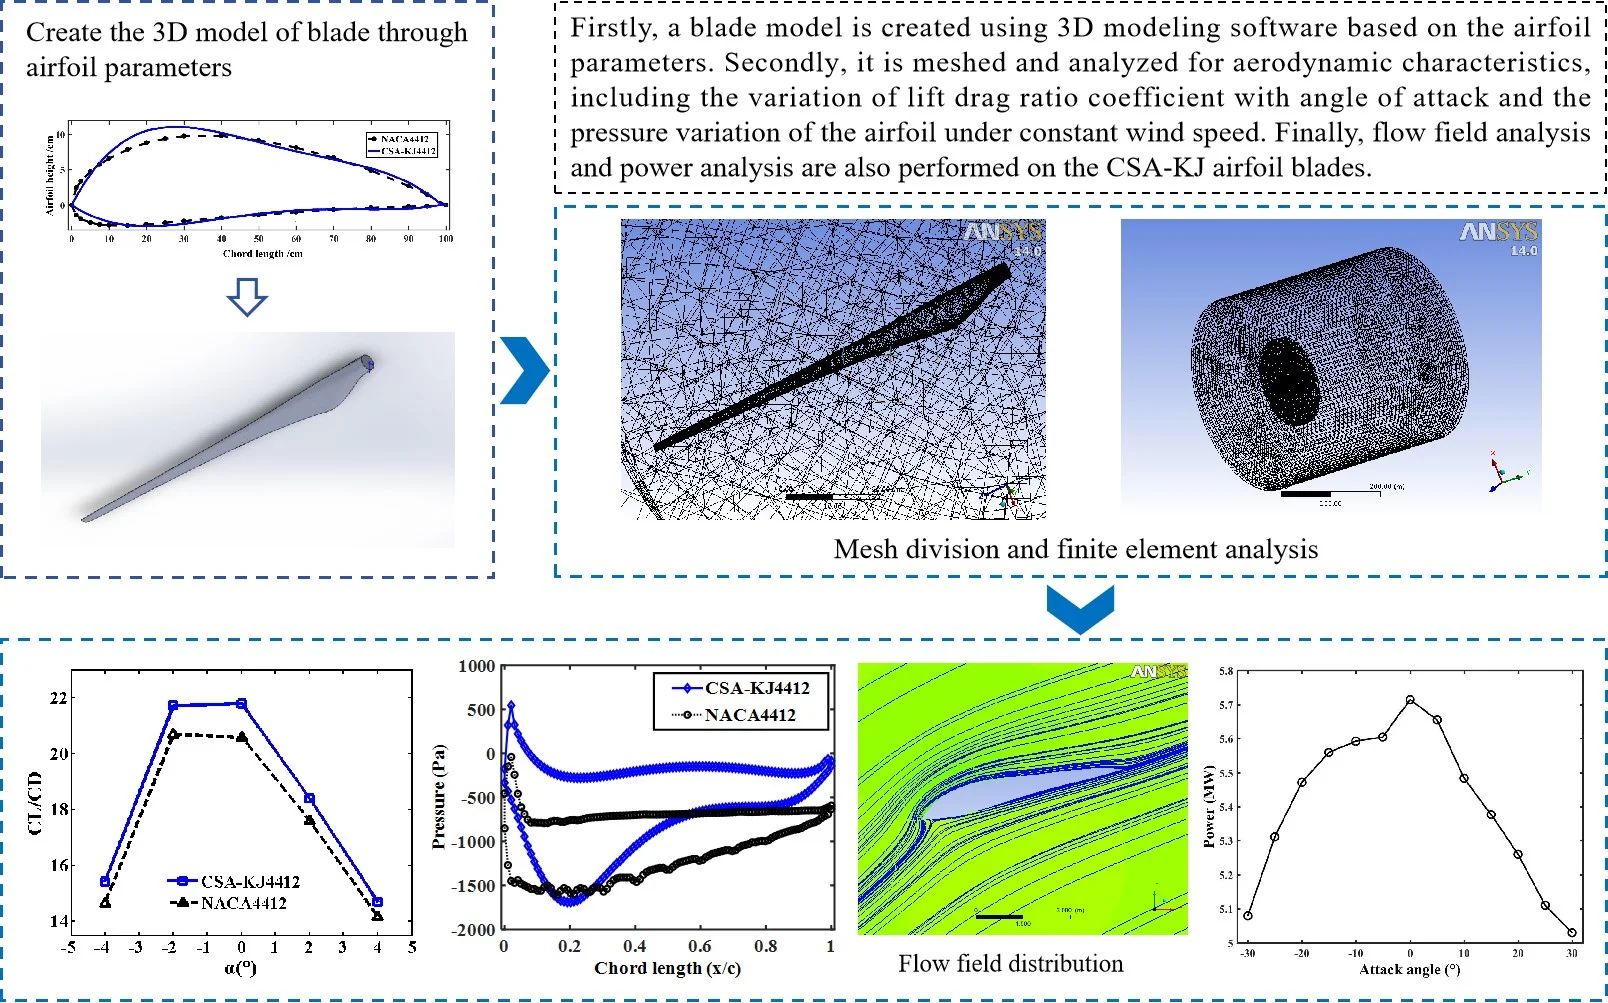 Aerodynamic characteristic analysis of wind turbine blades based on CSA-KJ airfoil optimization design